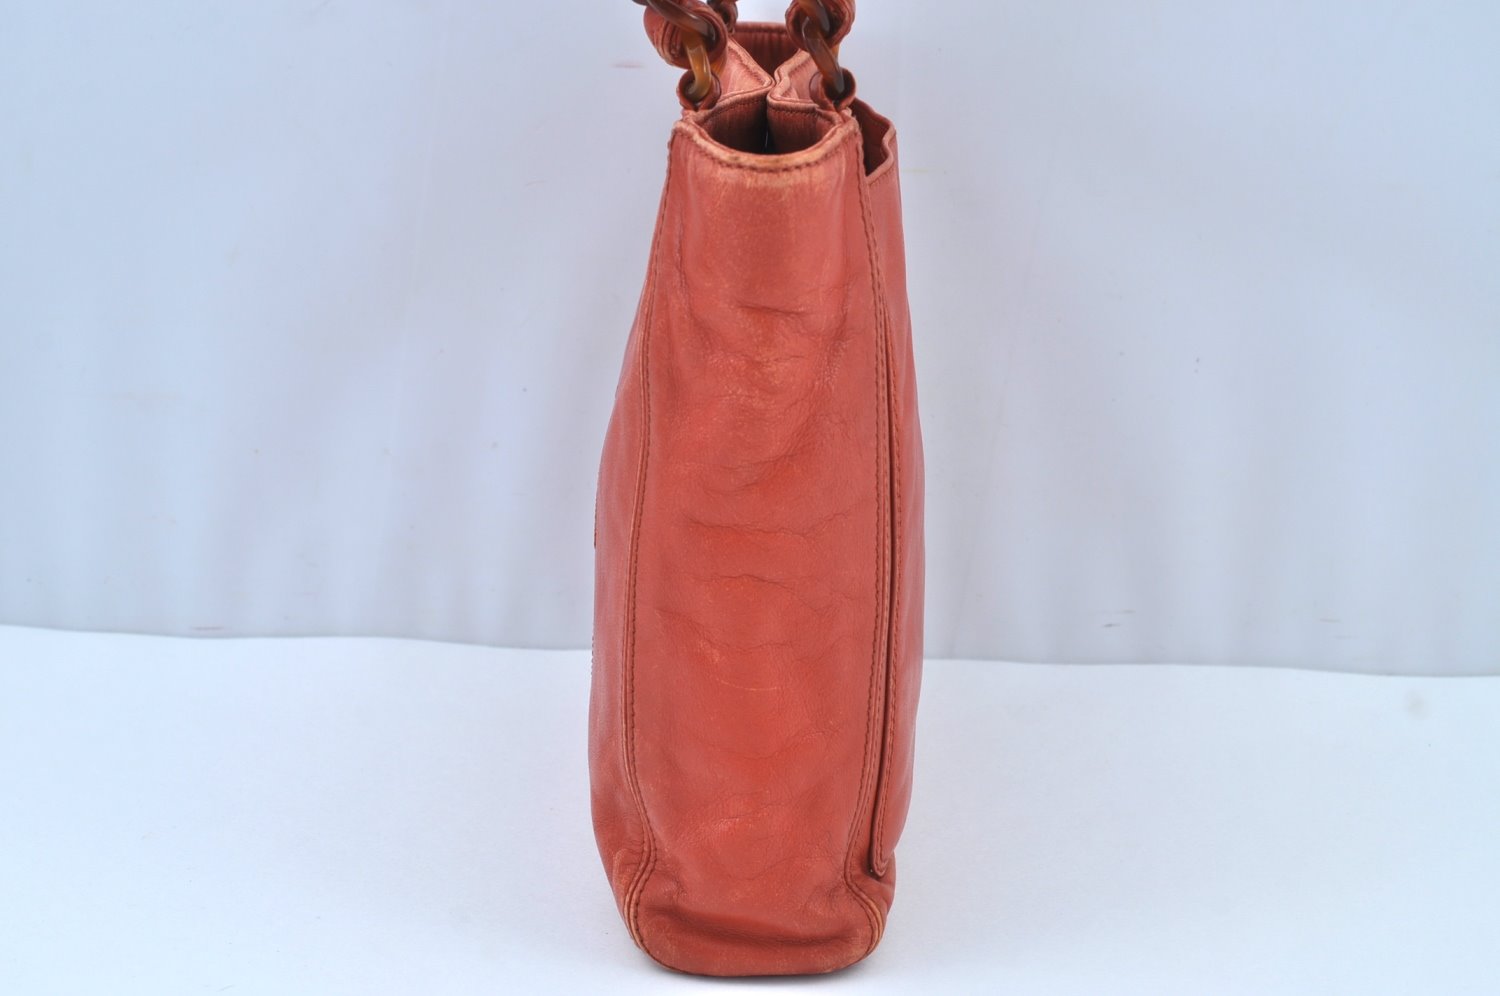 Authentic CHANEL Lamb Skin Plastic Chain Shoulder Hand Bag Purse Orange CC 9734H